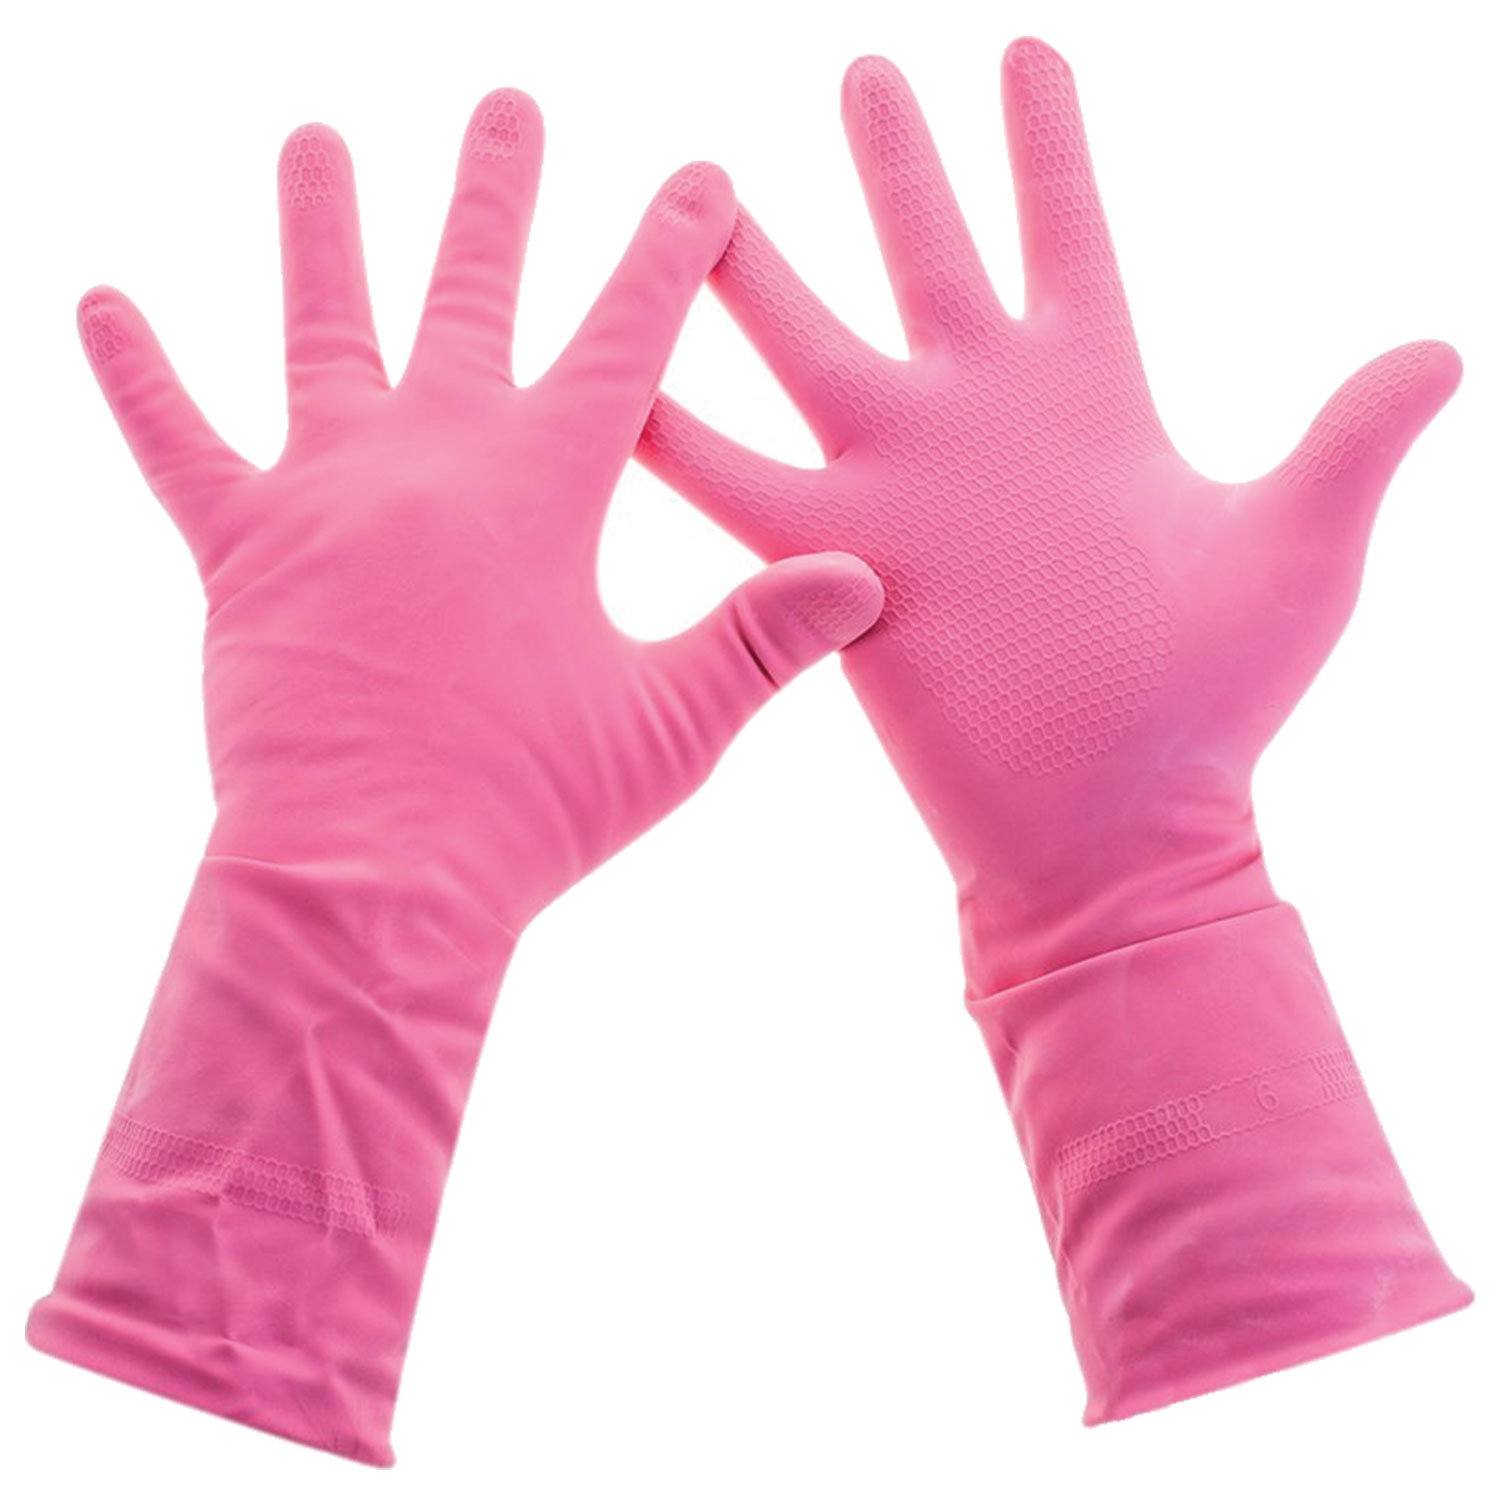 картинка Перчатки латексные, 1 пара, размер L, розовый, хозяйственные, "Practi Comfort", Paclan, 606355 от магазина Альфанит в Кунгуре